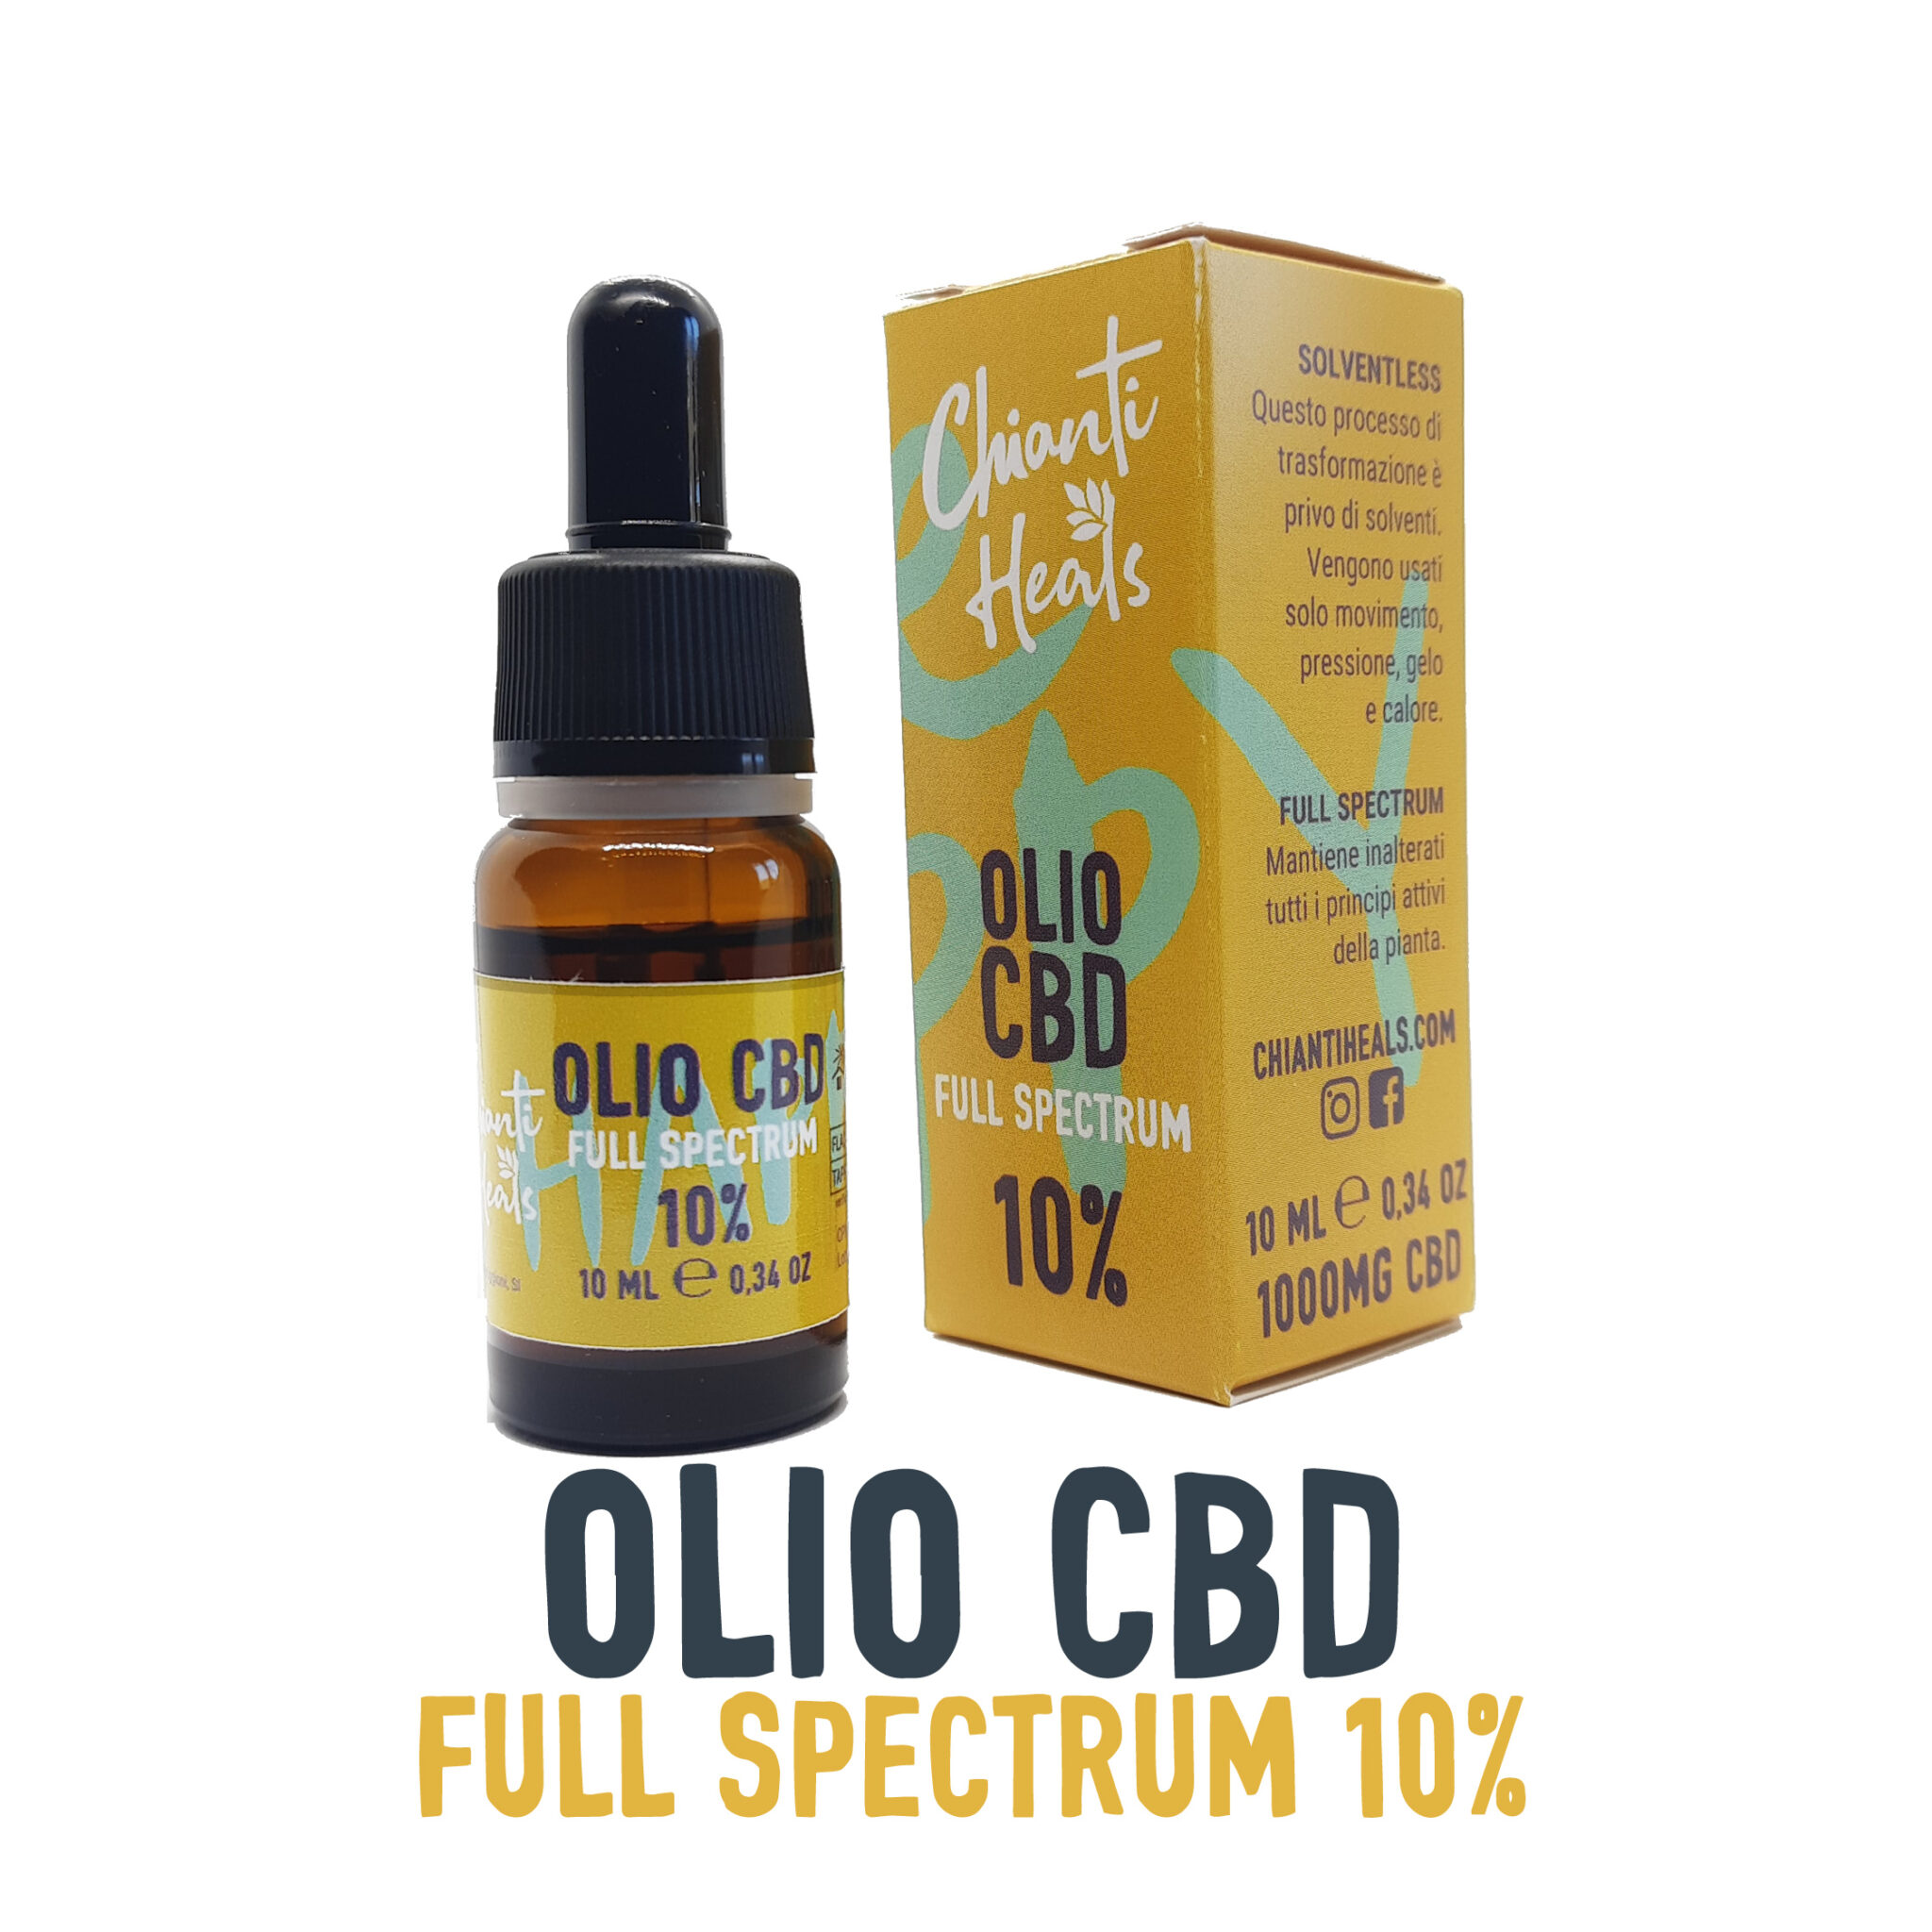 Olio CBD full spectrum